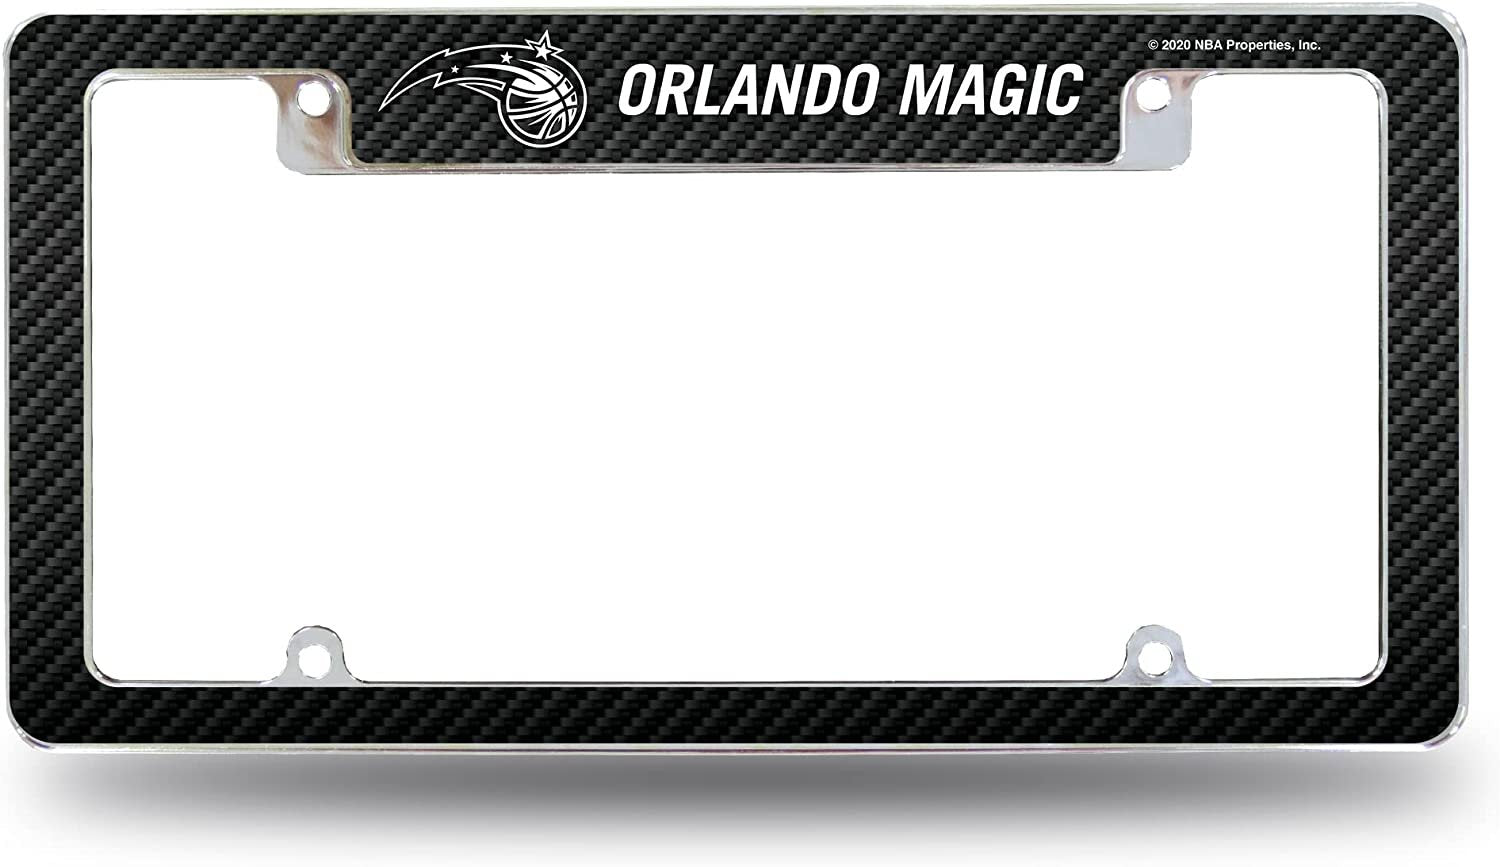 Orlando Magic Metal License Plate Frame Chrome Tag Cover Carbon Fiber Design 6x12 Inch